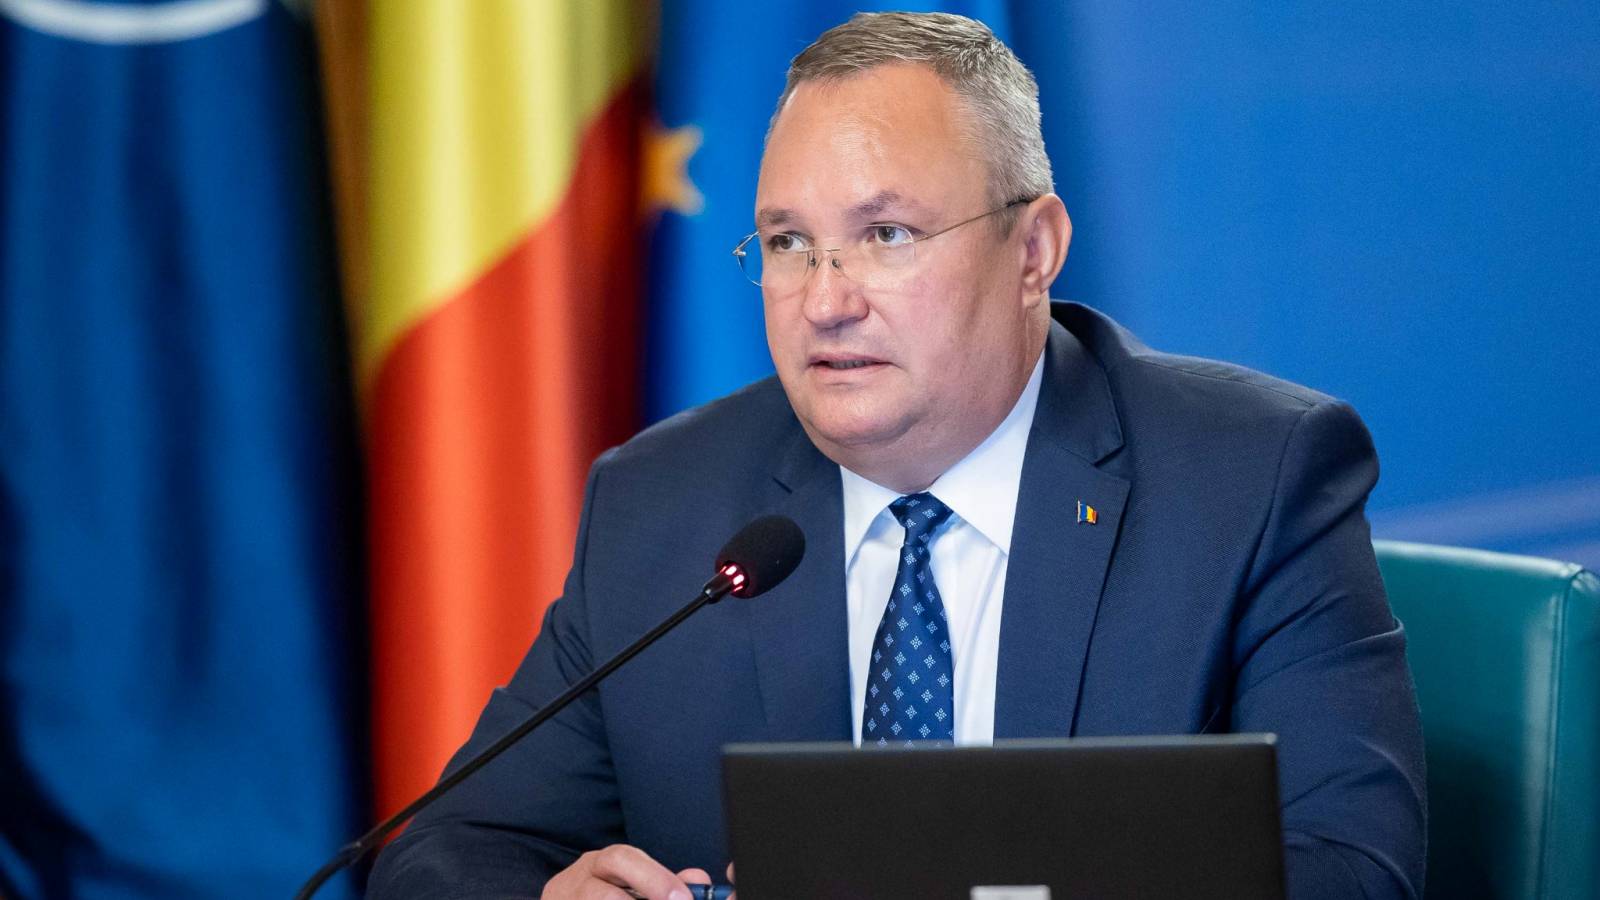 Nicolae Ciuca a Discutat cu Premierul Moldovei Despre Extinderea Parteneriatului Strategic